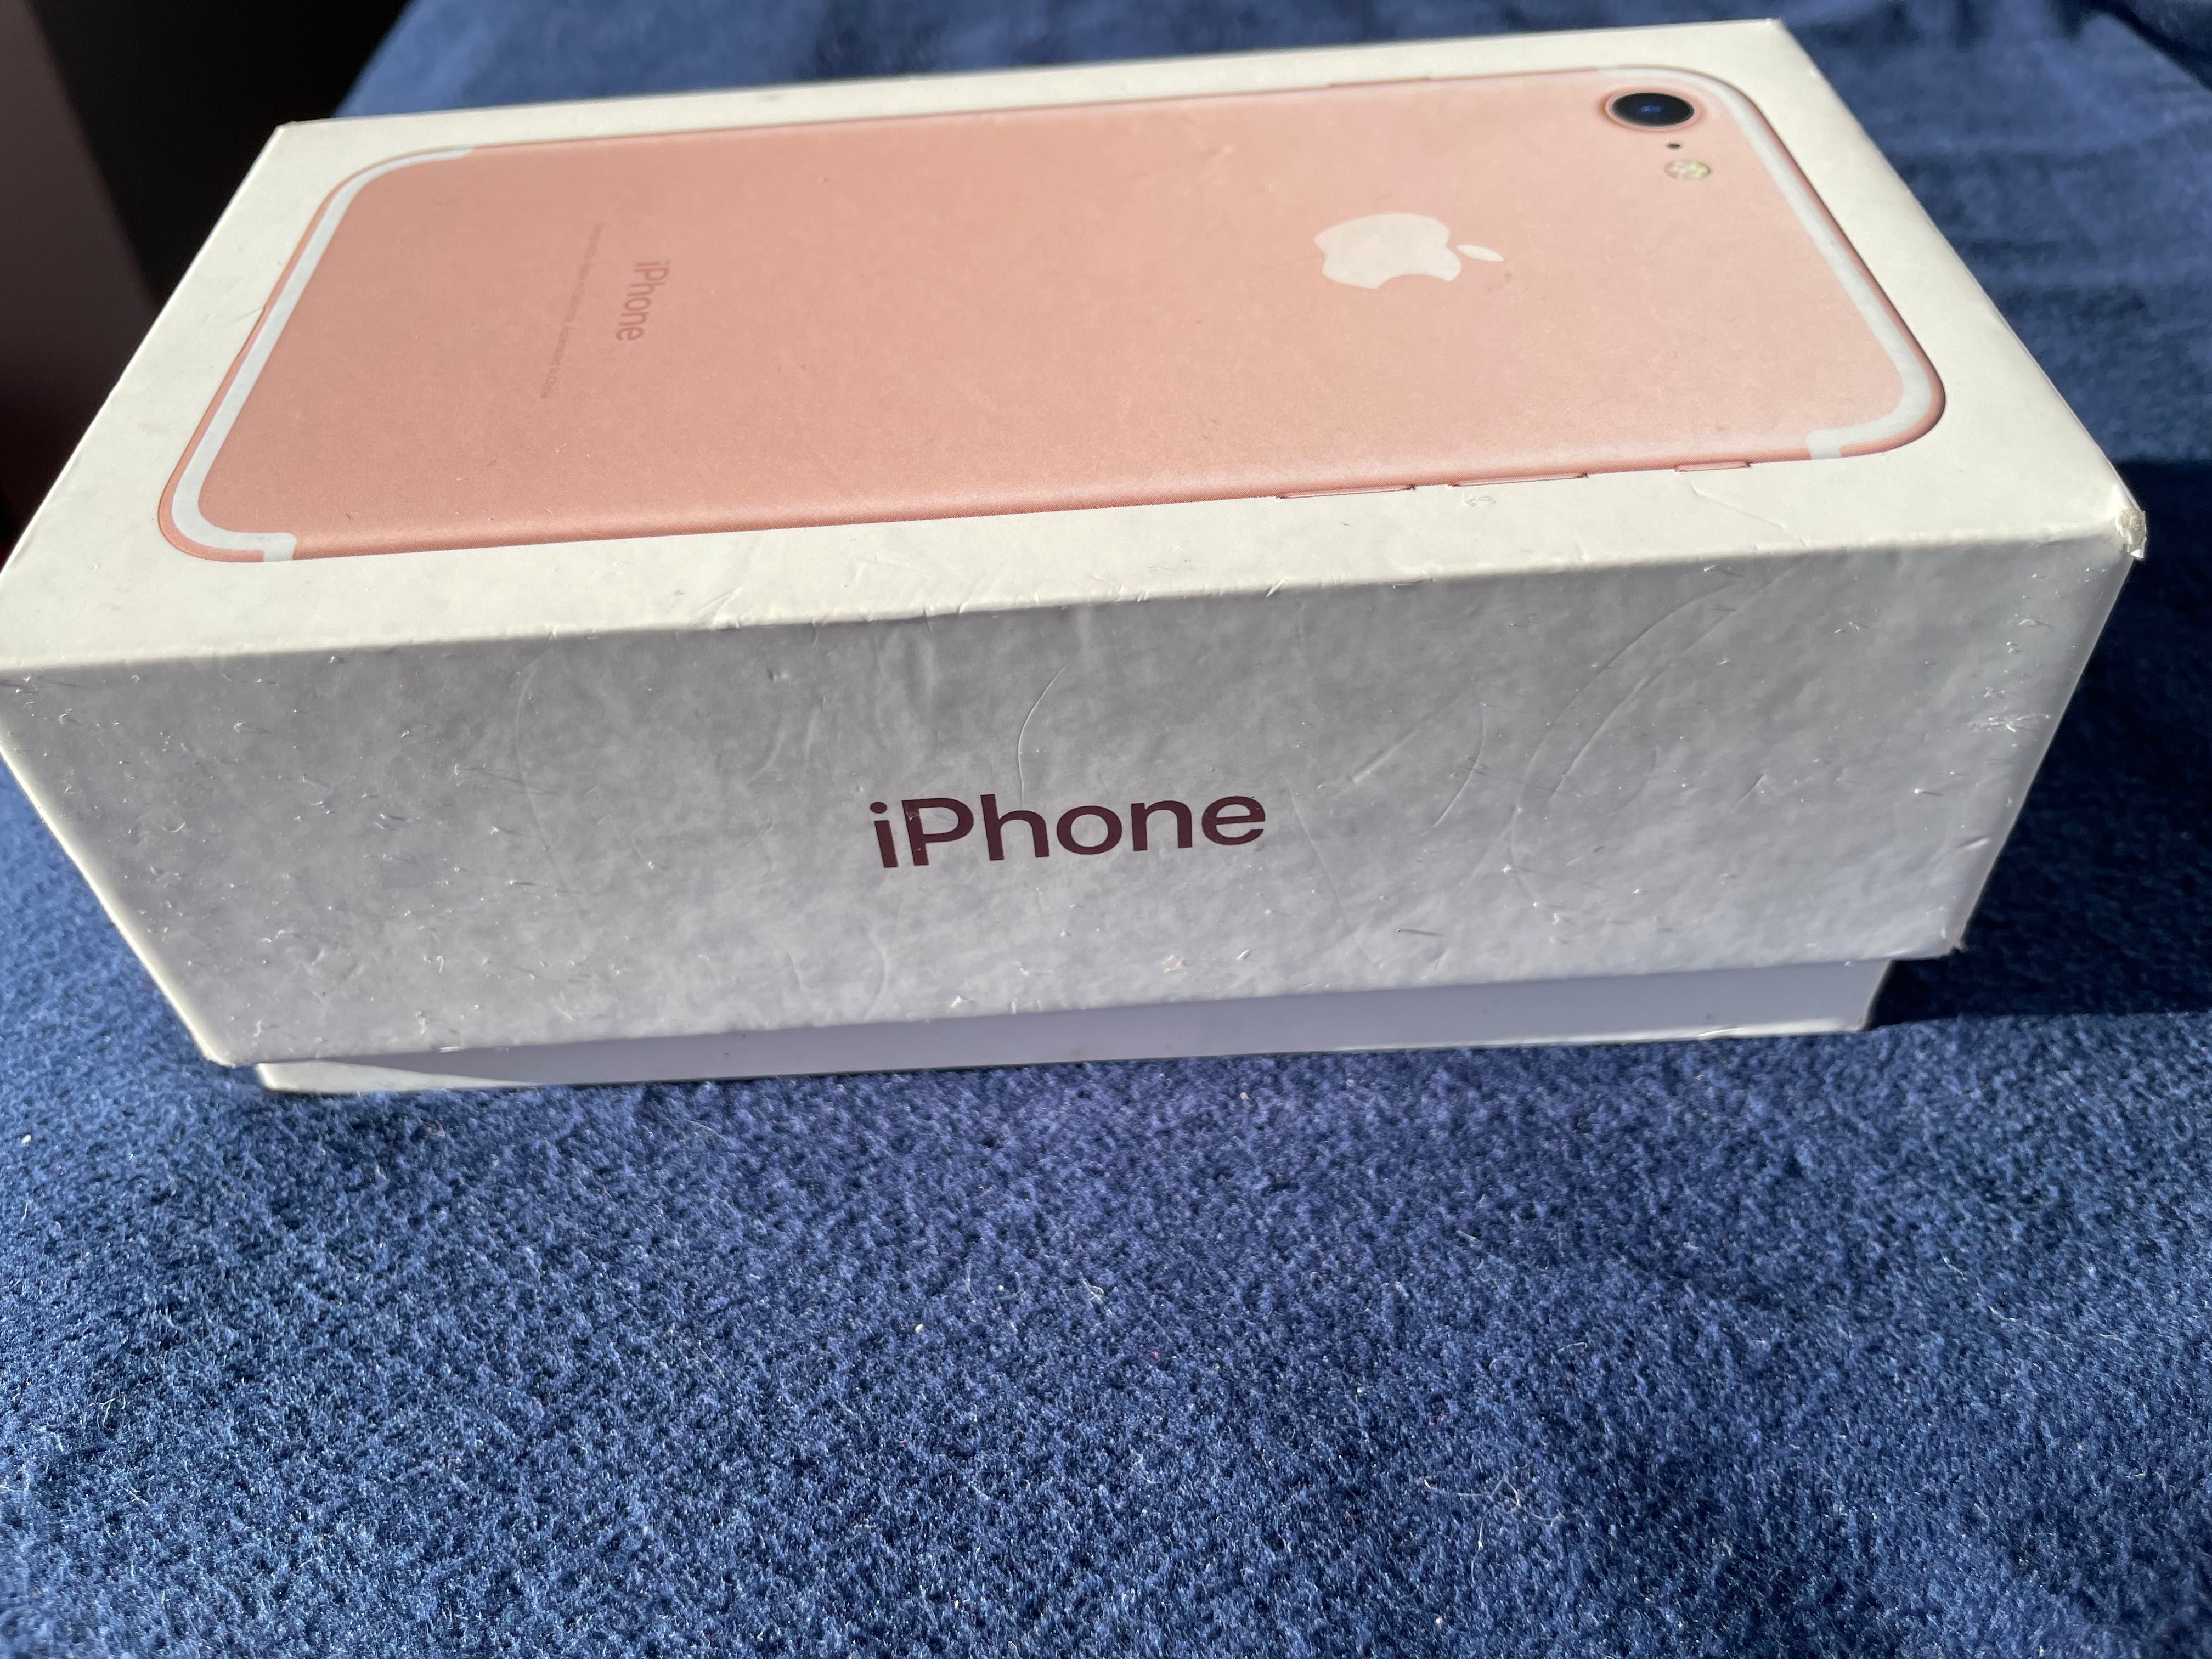 iPhone 7 desbloqueado (32Gb) Rose Gold